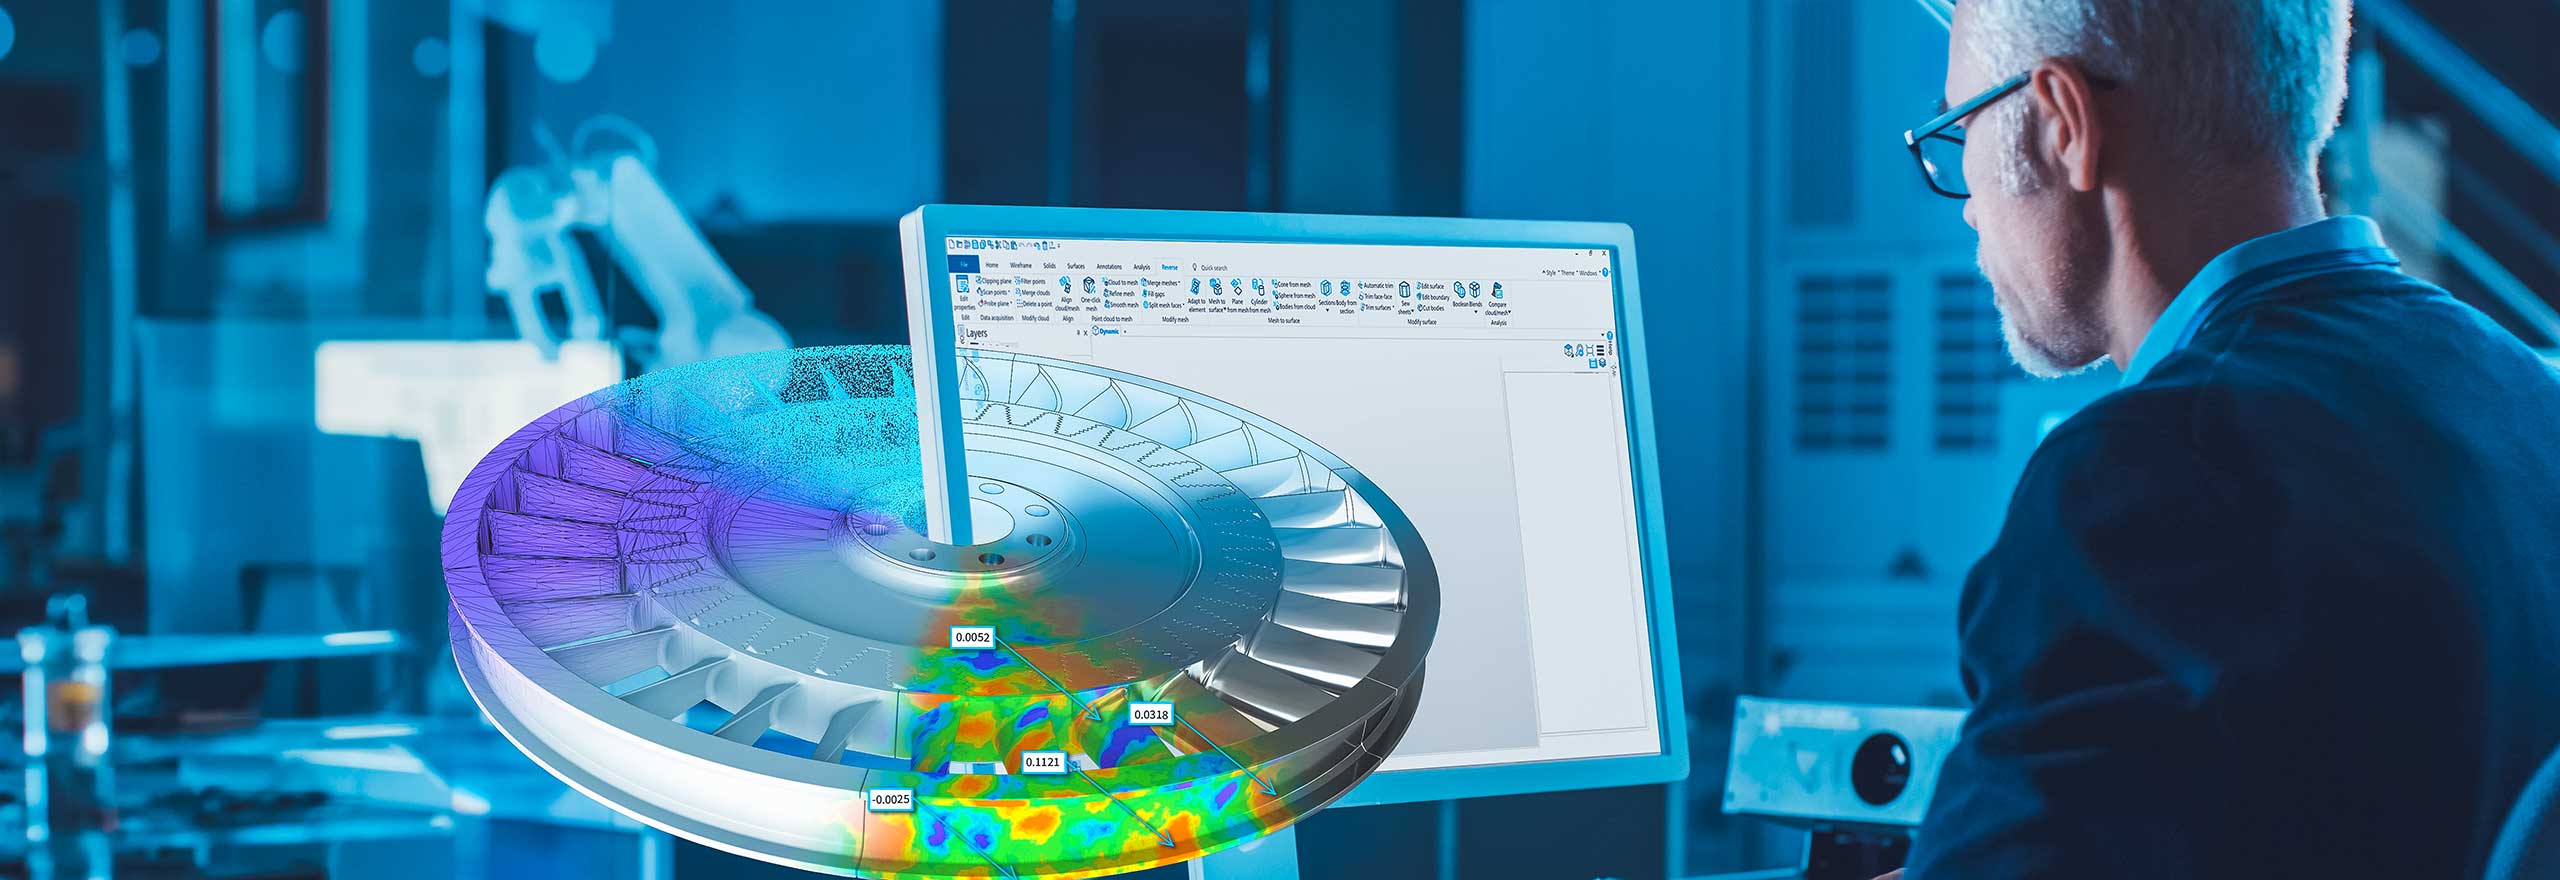 Ingenieur arbeitet an einem Computer mit dem virtuellen Modell eines Produktdesigns, das aus dem Bildschirm springt.